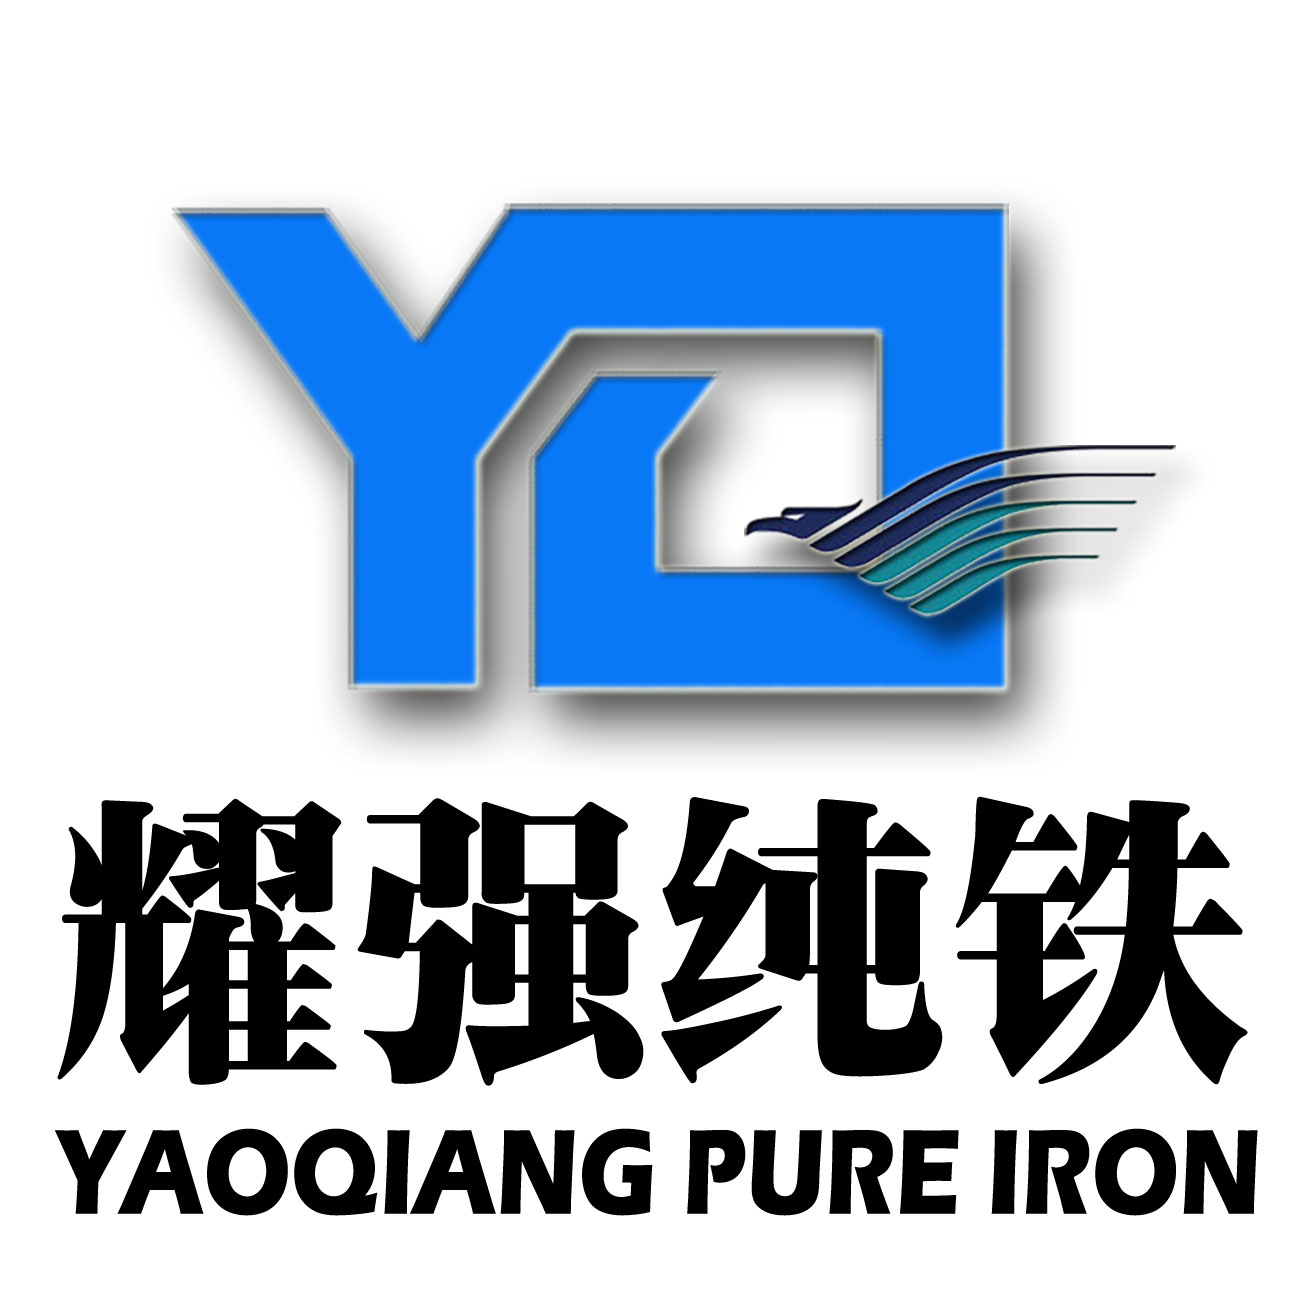 YT01原料纯铁